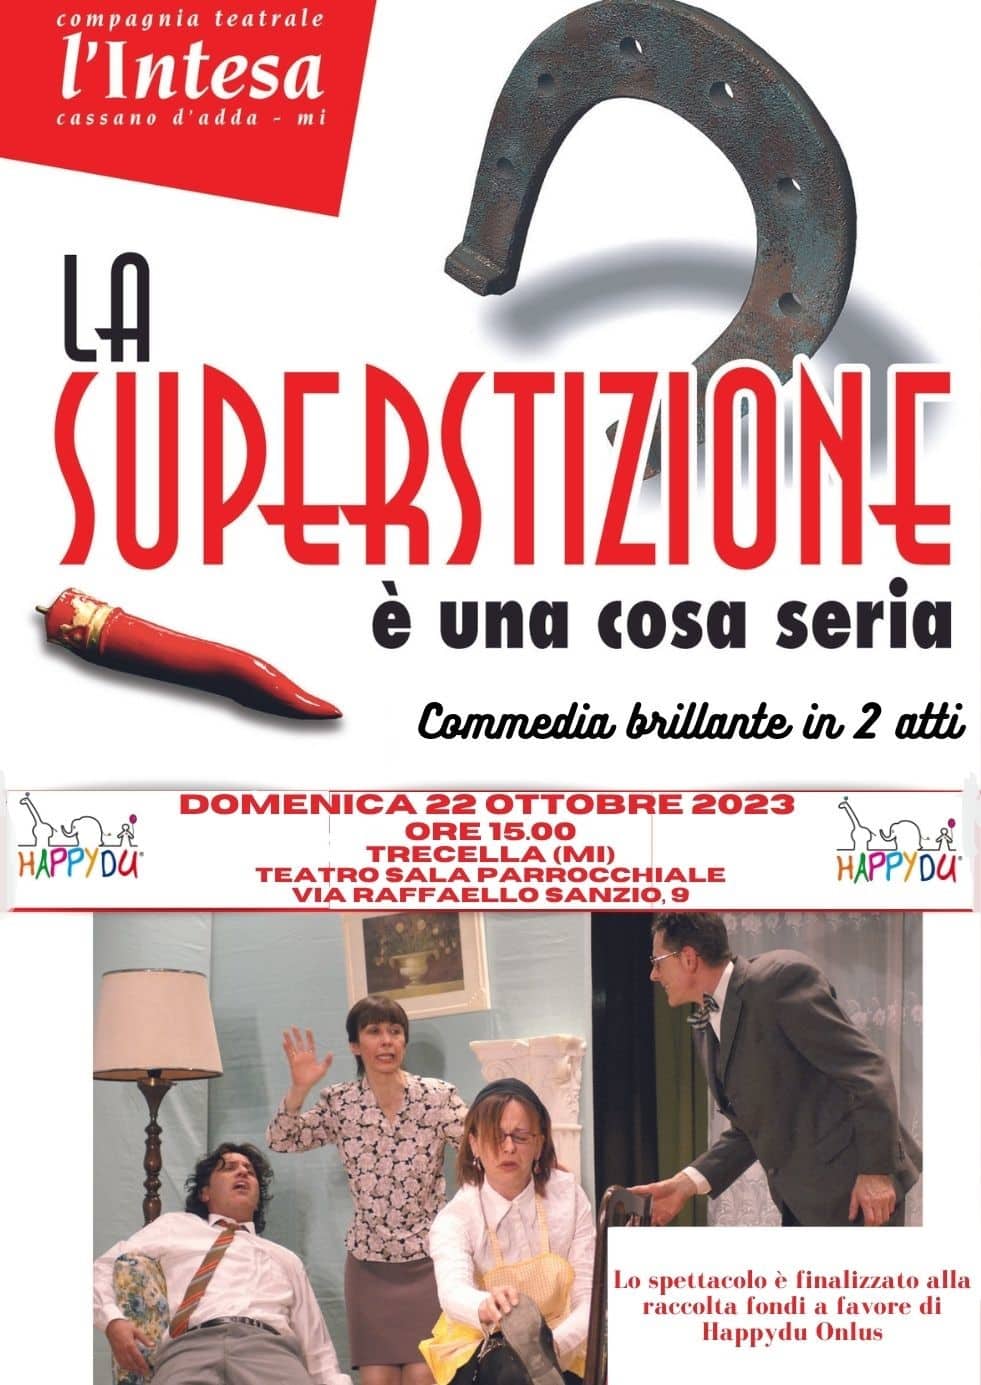 La compagnia teatrale L’intesa presenta ‘La superstizione è una cosa seria’